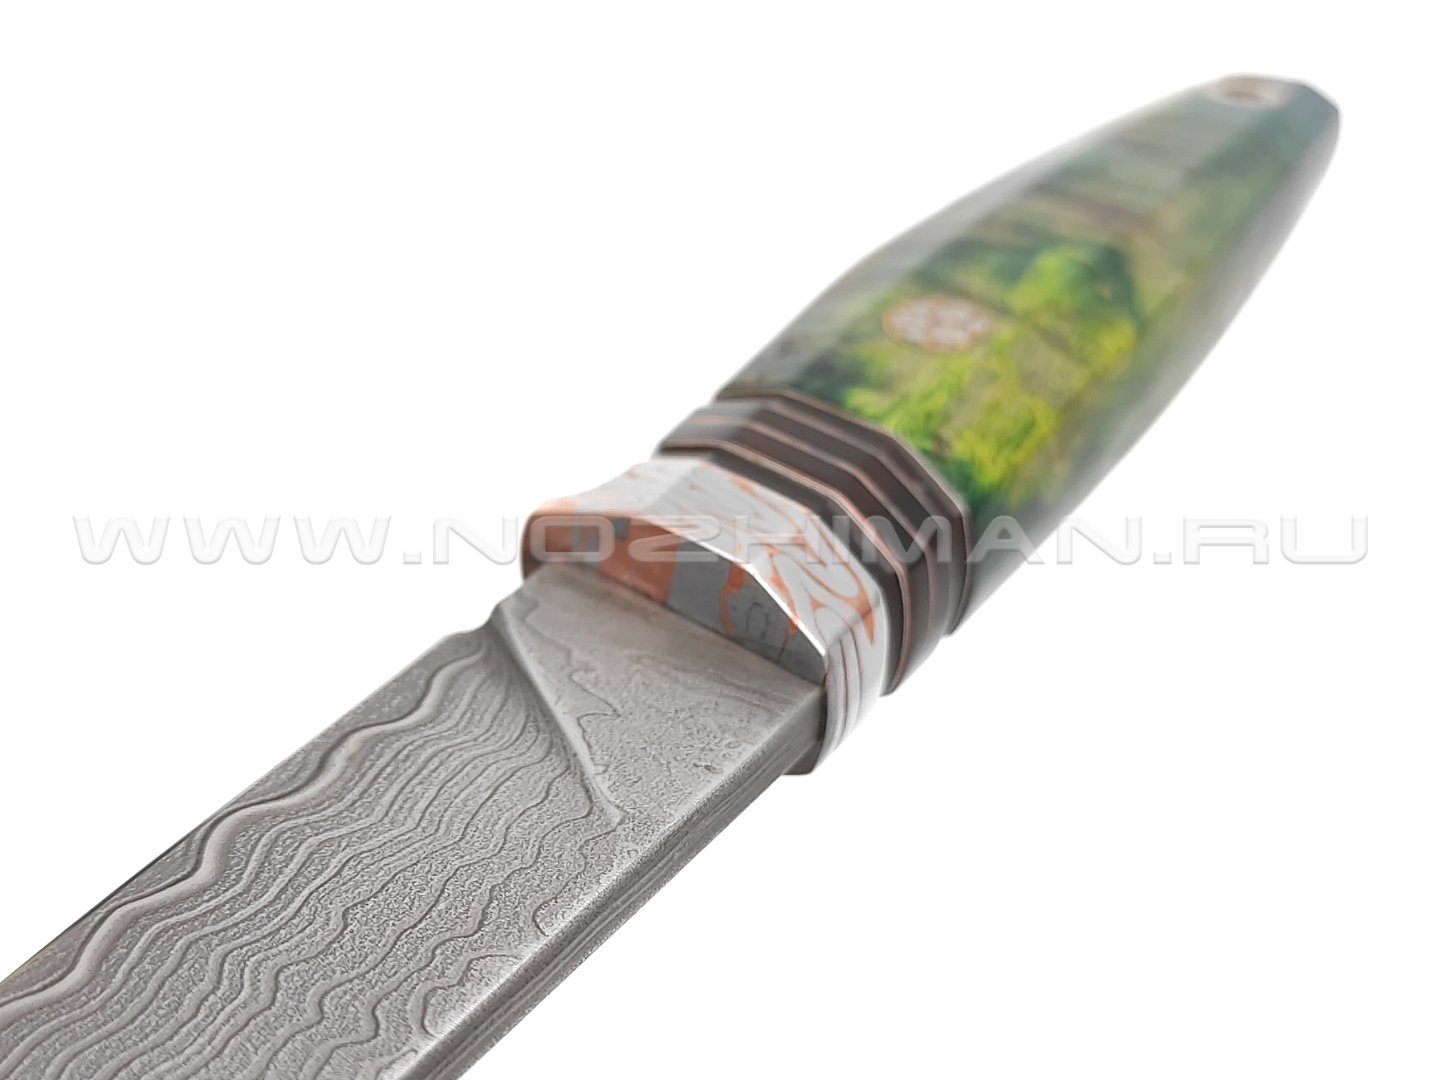 Нож "НЛВ87" ламинат M390, рукоять карельская береза, мокумэ-ганэ (Кузница Васильева)